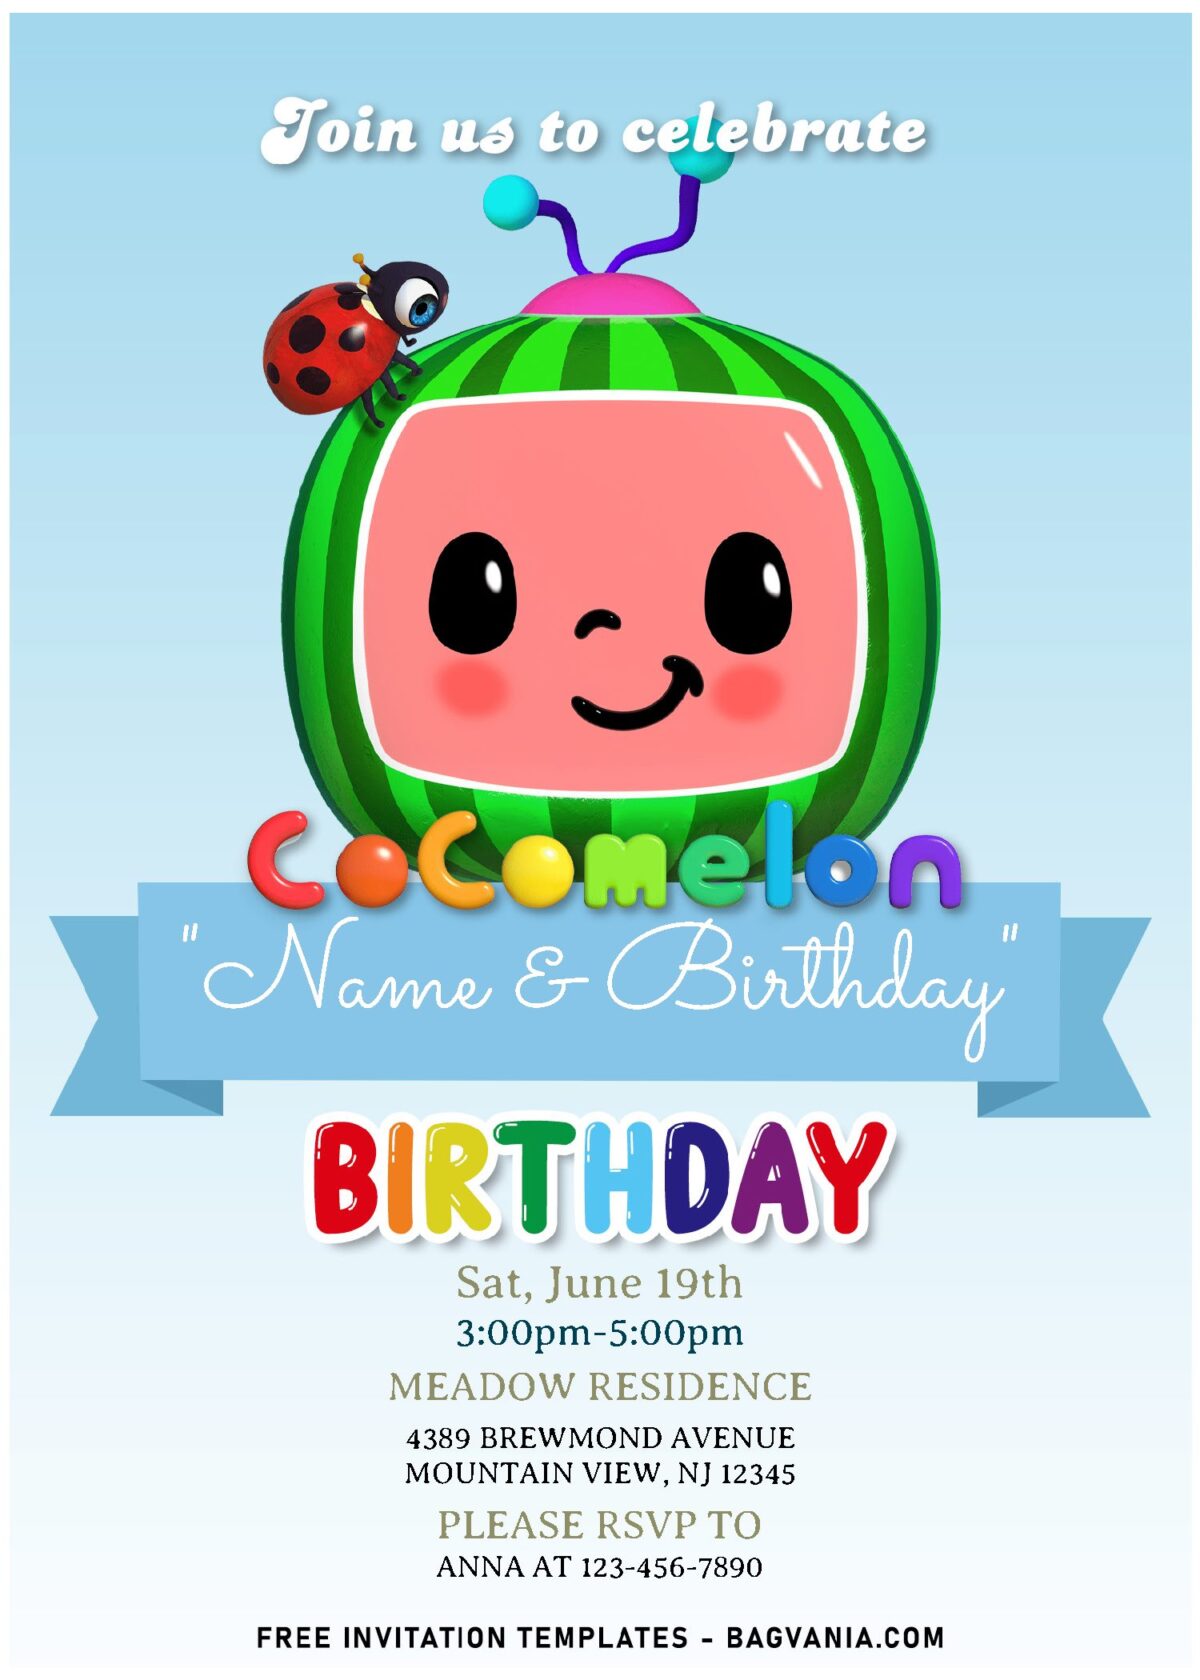 (Free Editable PDF) Bright & Cheerful Cocomelon Birthday Invitation Templates